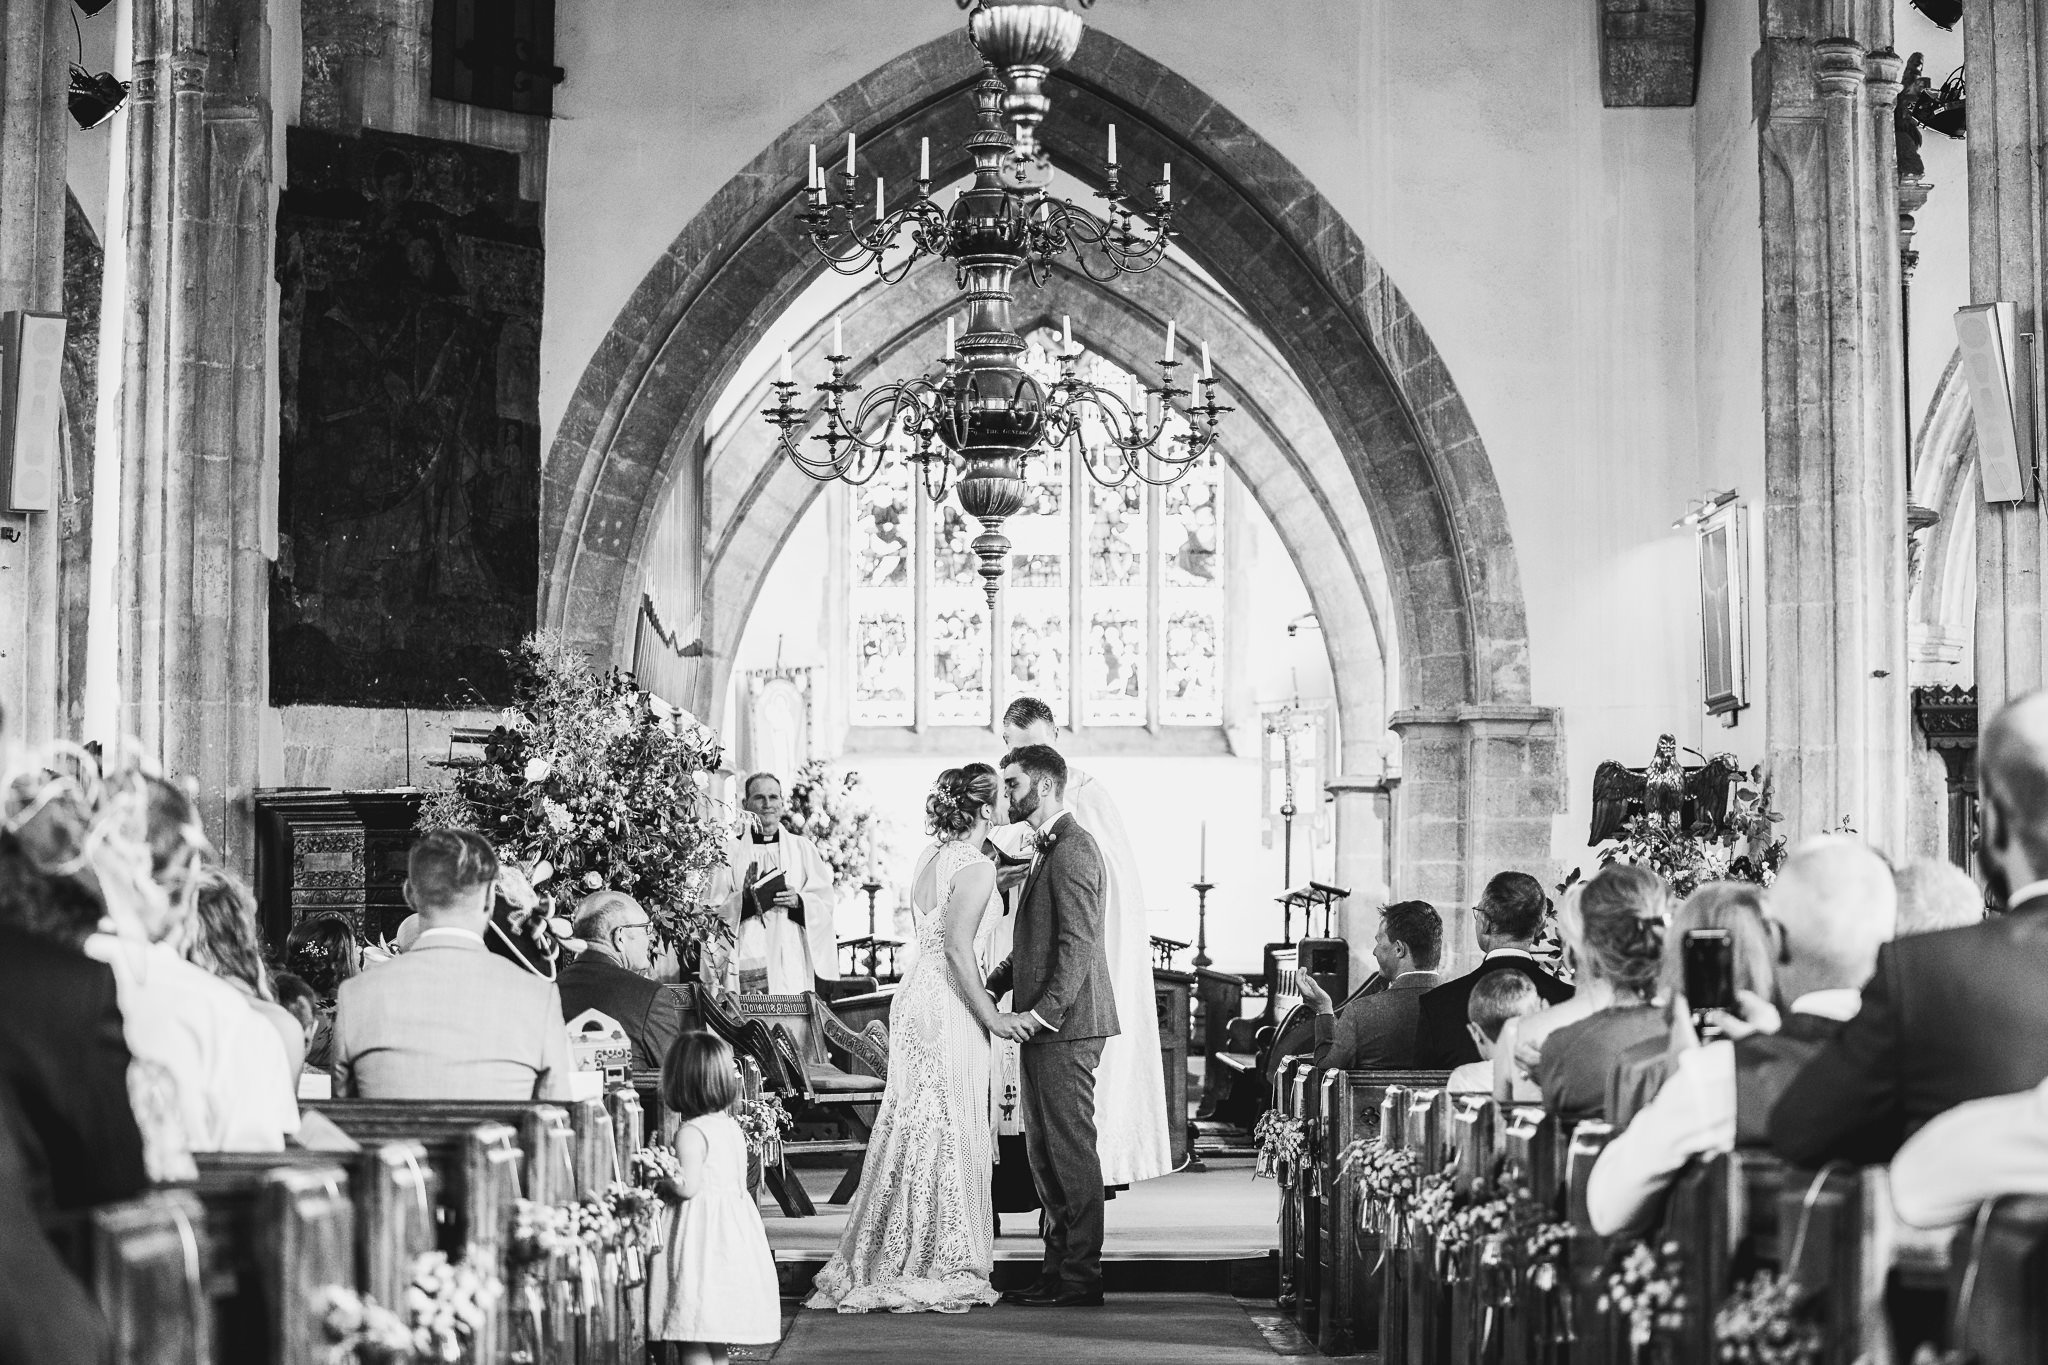 Maddi & Ben's wedding at Wedmore in Somerset (marquee wedding)-43.jpg